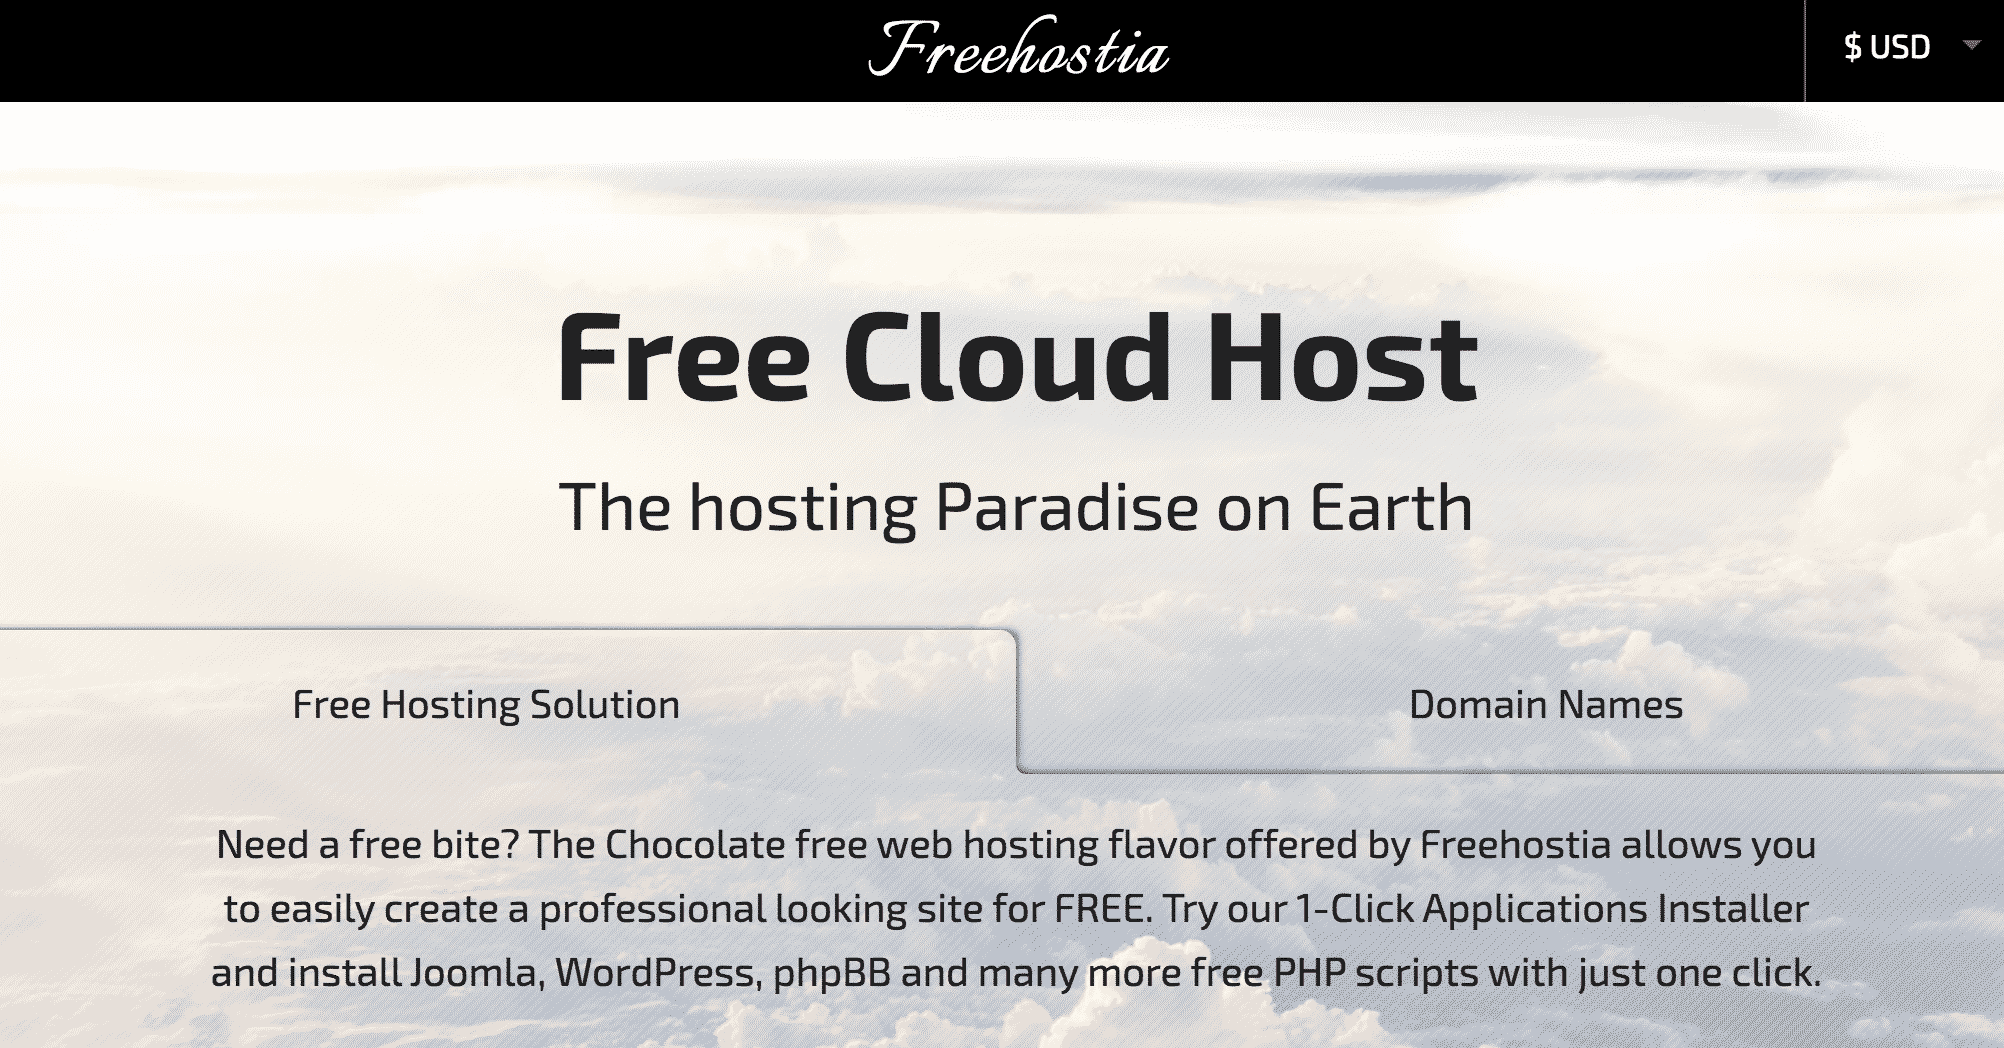 Freehostia Free Cloud Host